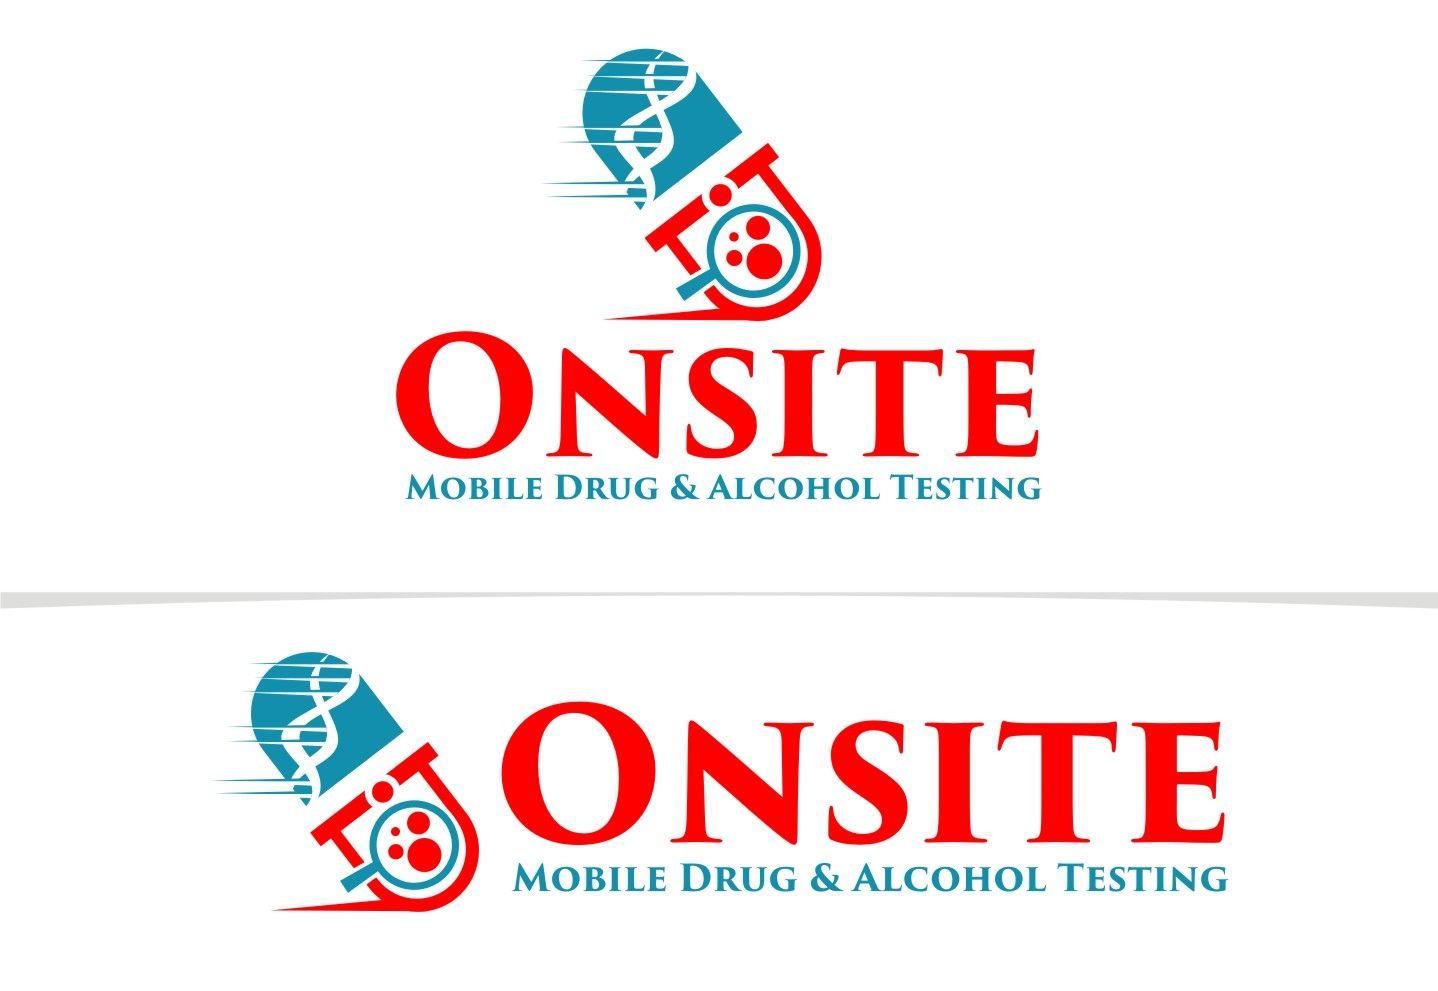 Alcohol Company Logo - Business Logo Design for Onsite Mobile Drug & Alcohol Testing